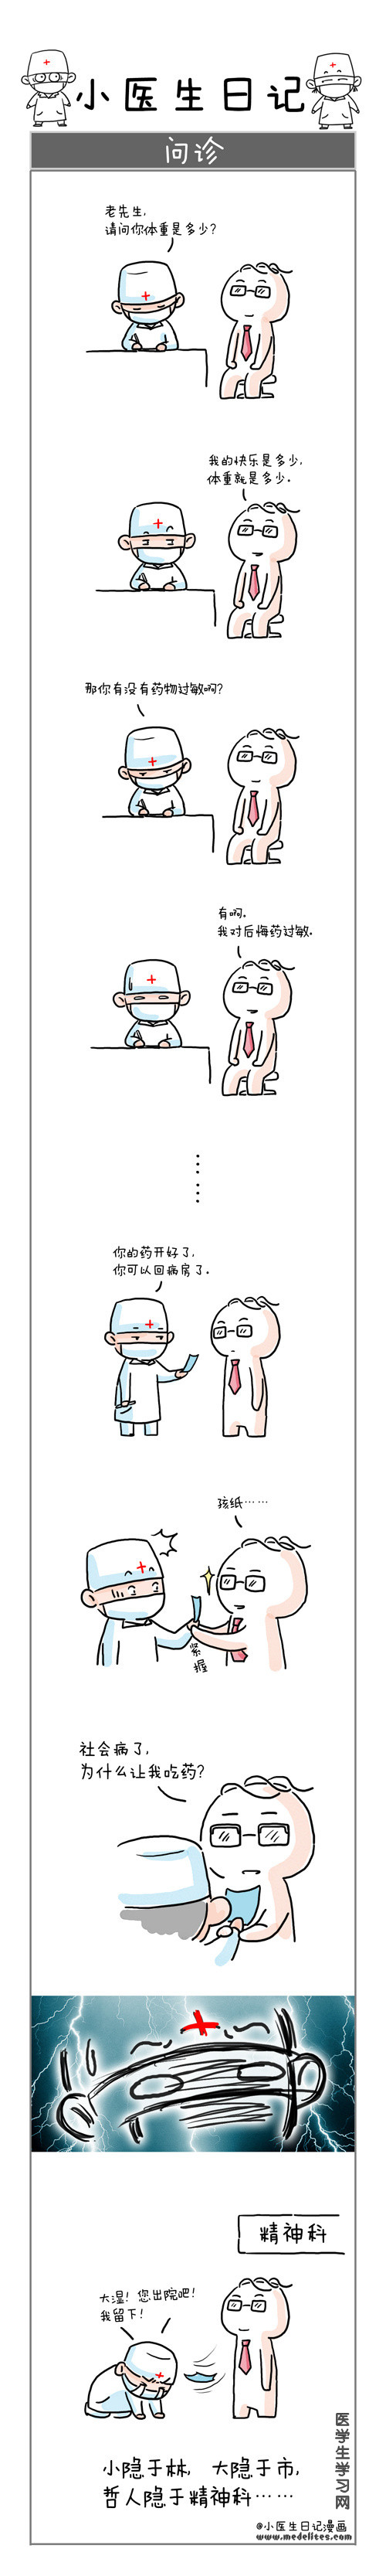 小医生日记漫画-问诊